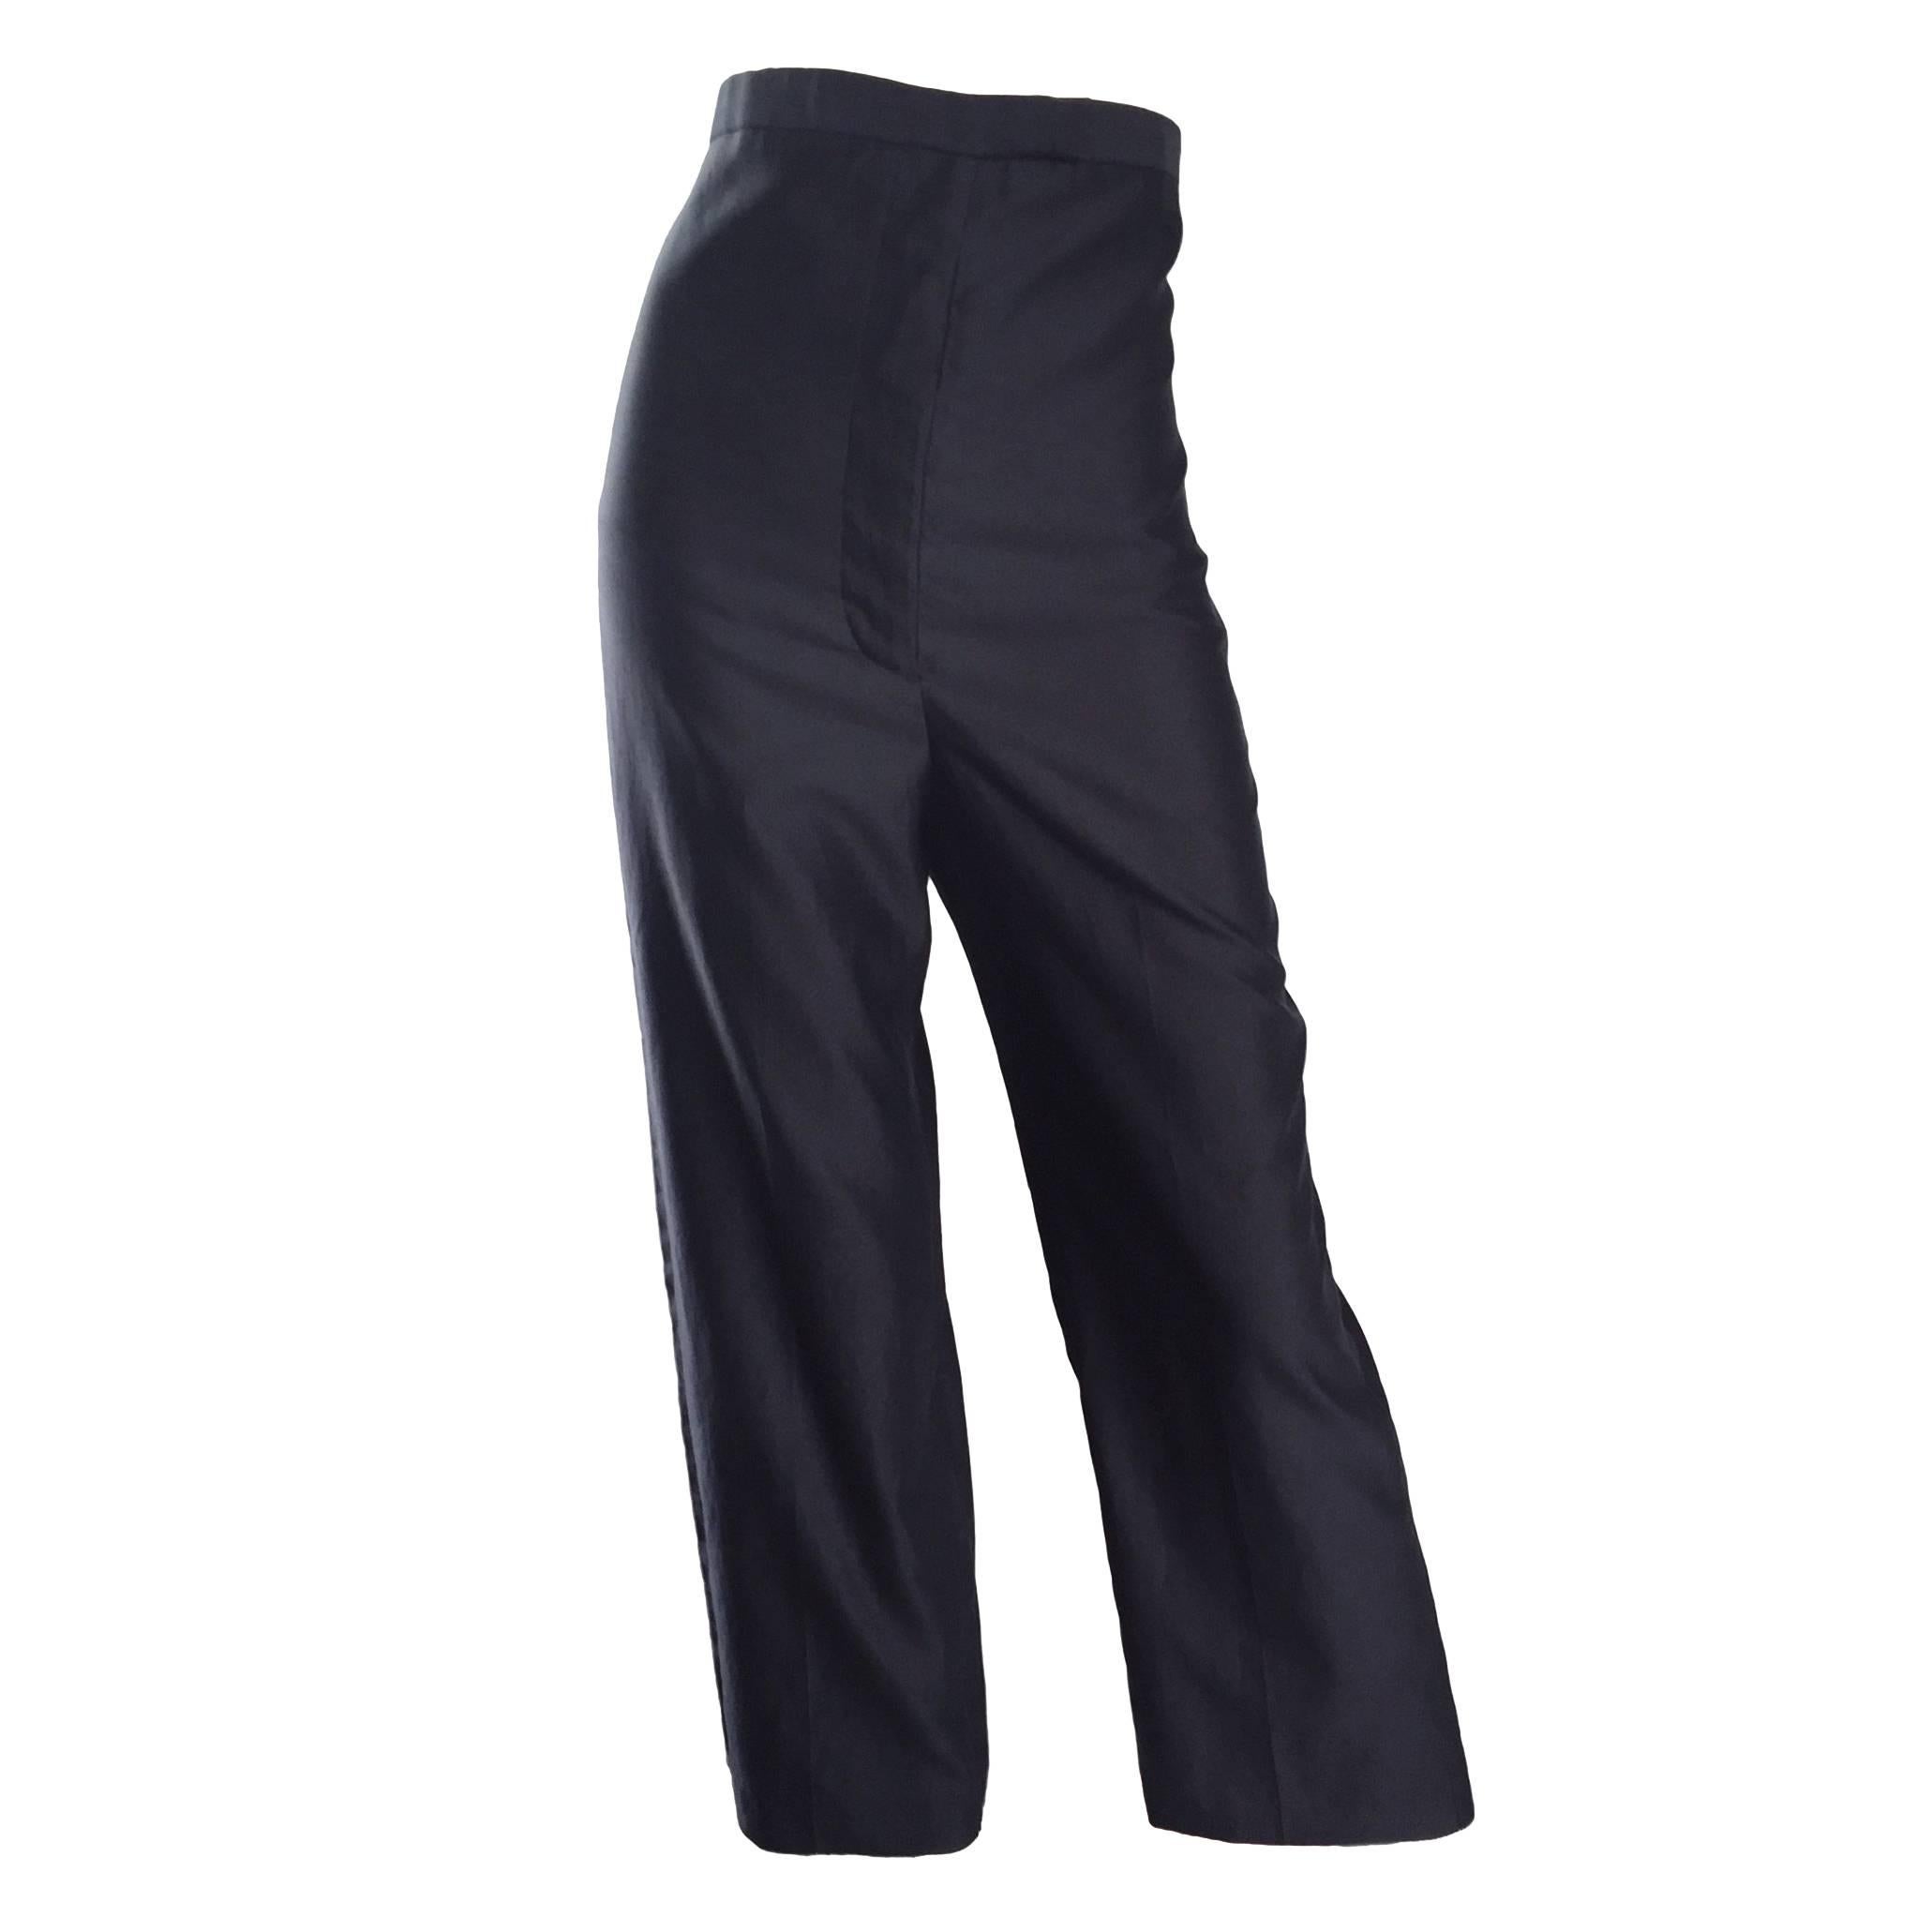 Importante Raro Alexander McQueen Vintage Años 90 Pantalones negros de cintura ultra alta 